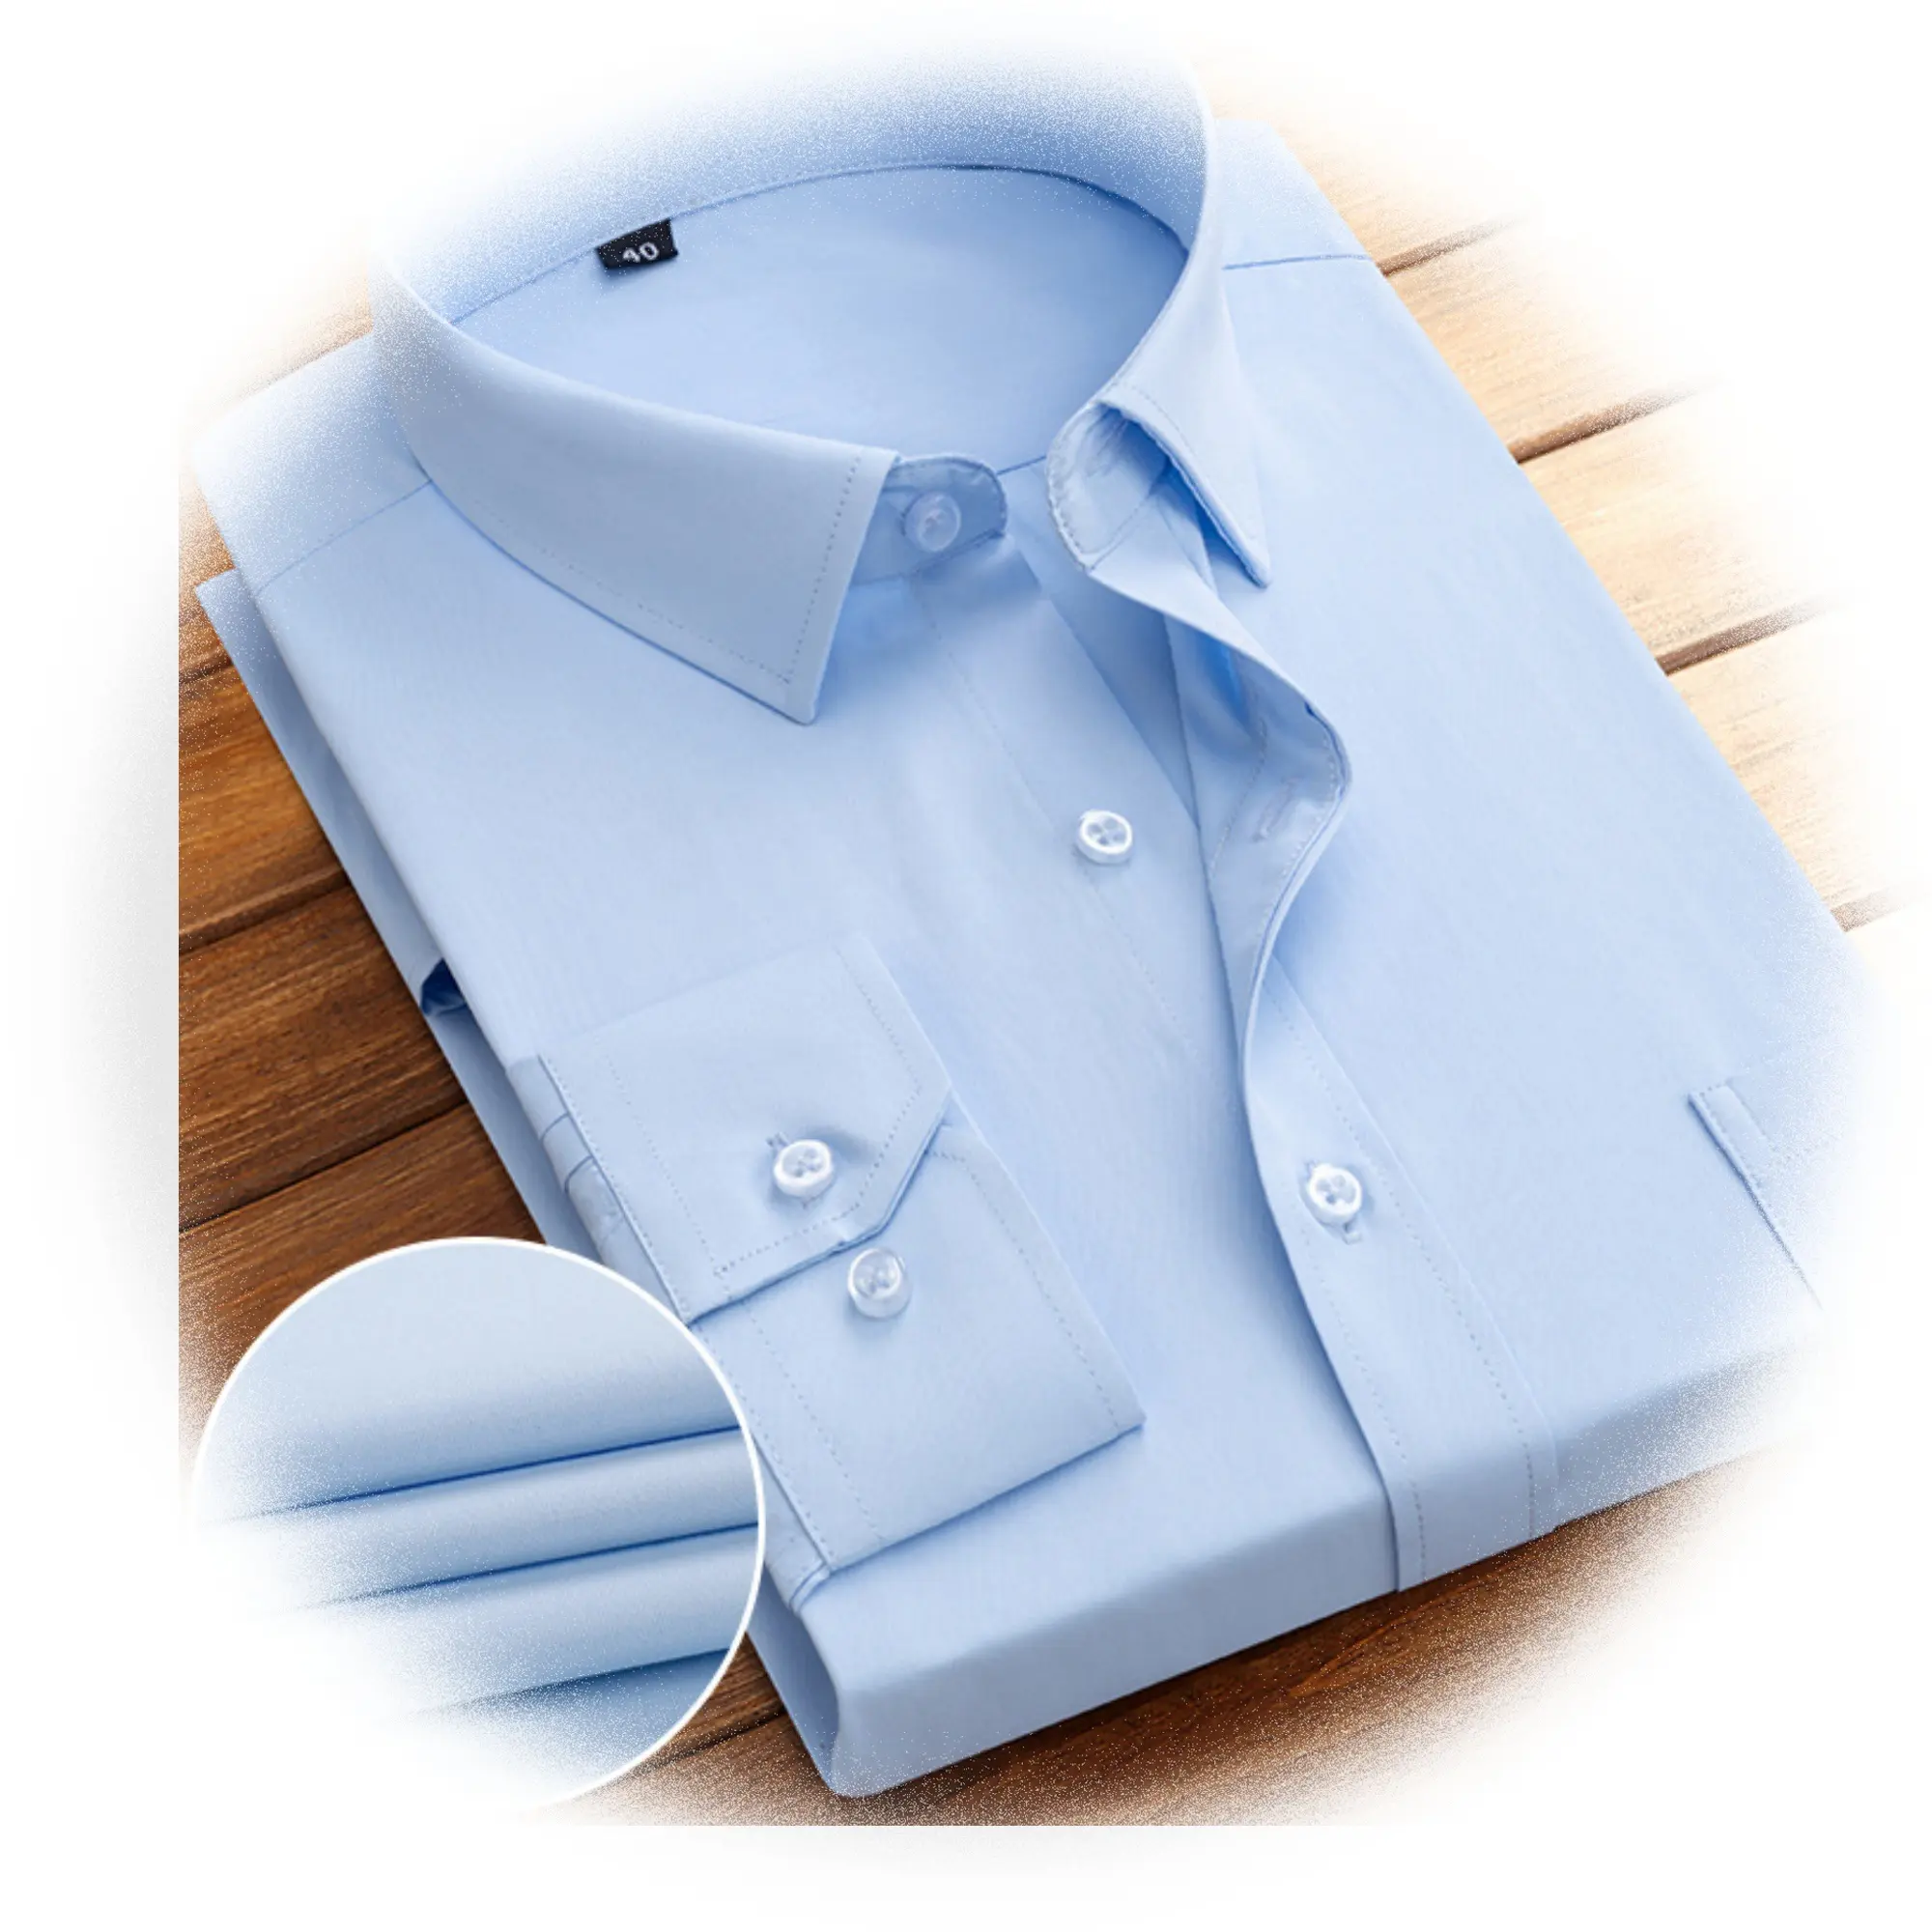 Фабрика продаж, текстиль, производитель tc поплин, однотонная окрашенная и отбеленная белая 65 полиэфирная 35 хлопчатобумажная ткань для футболки